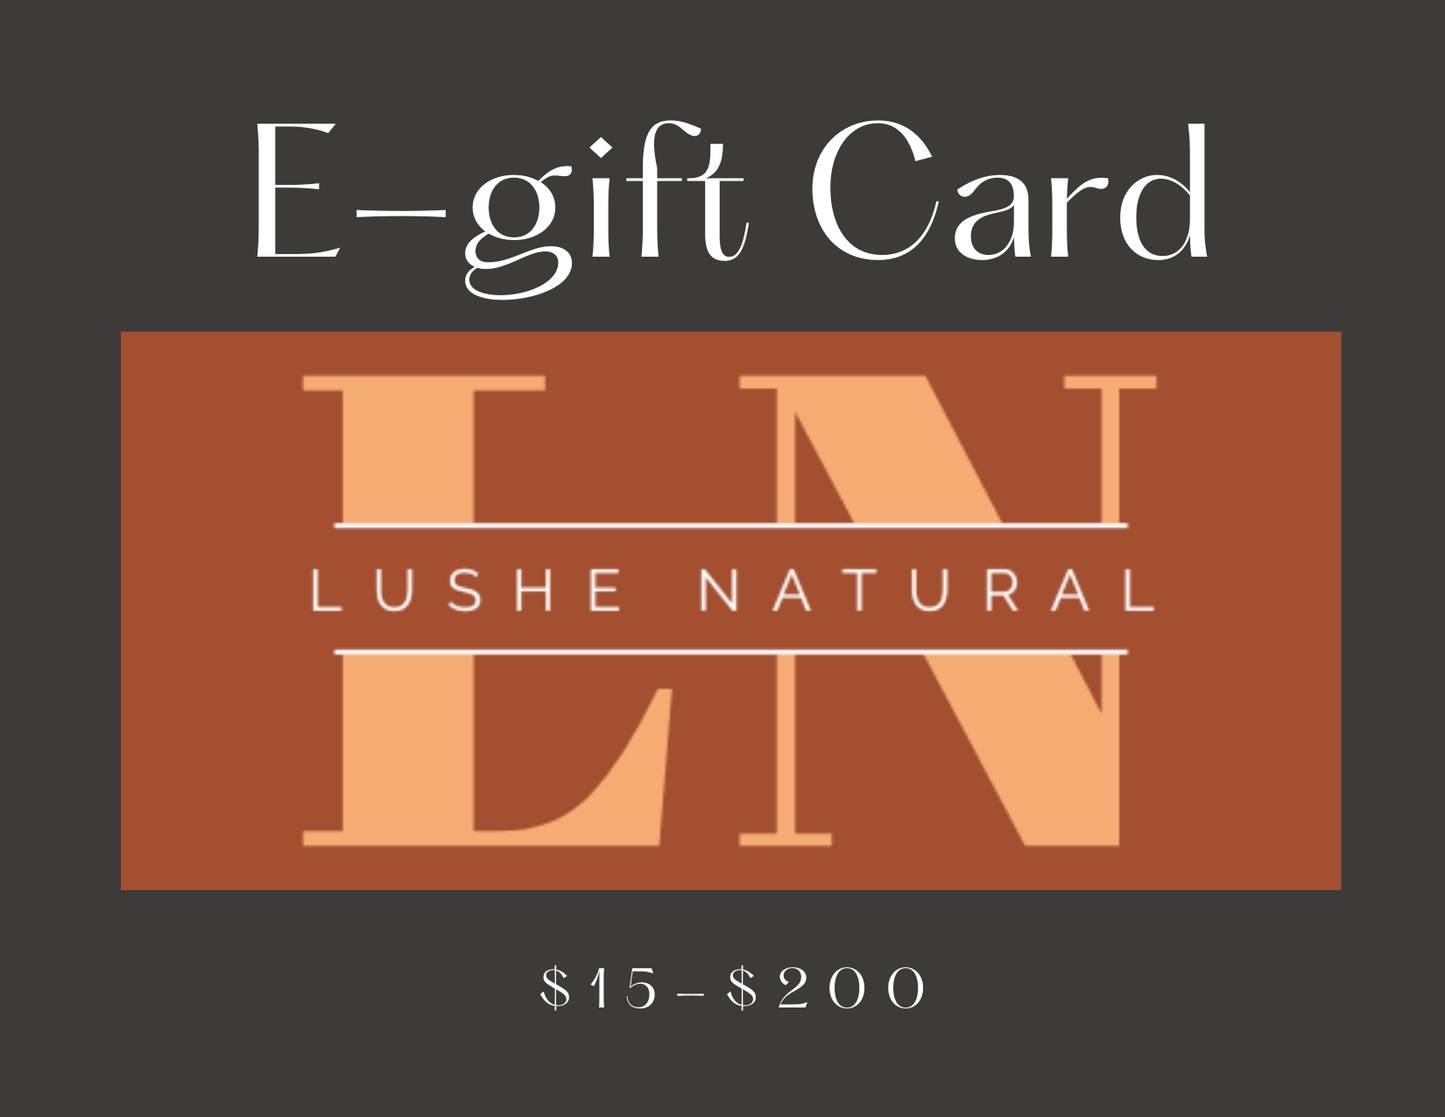 Lushe Natural Gift Card